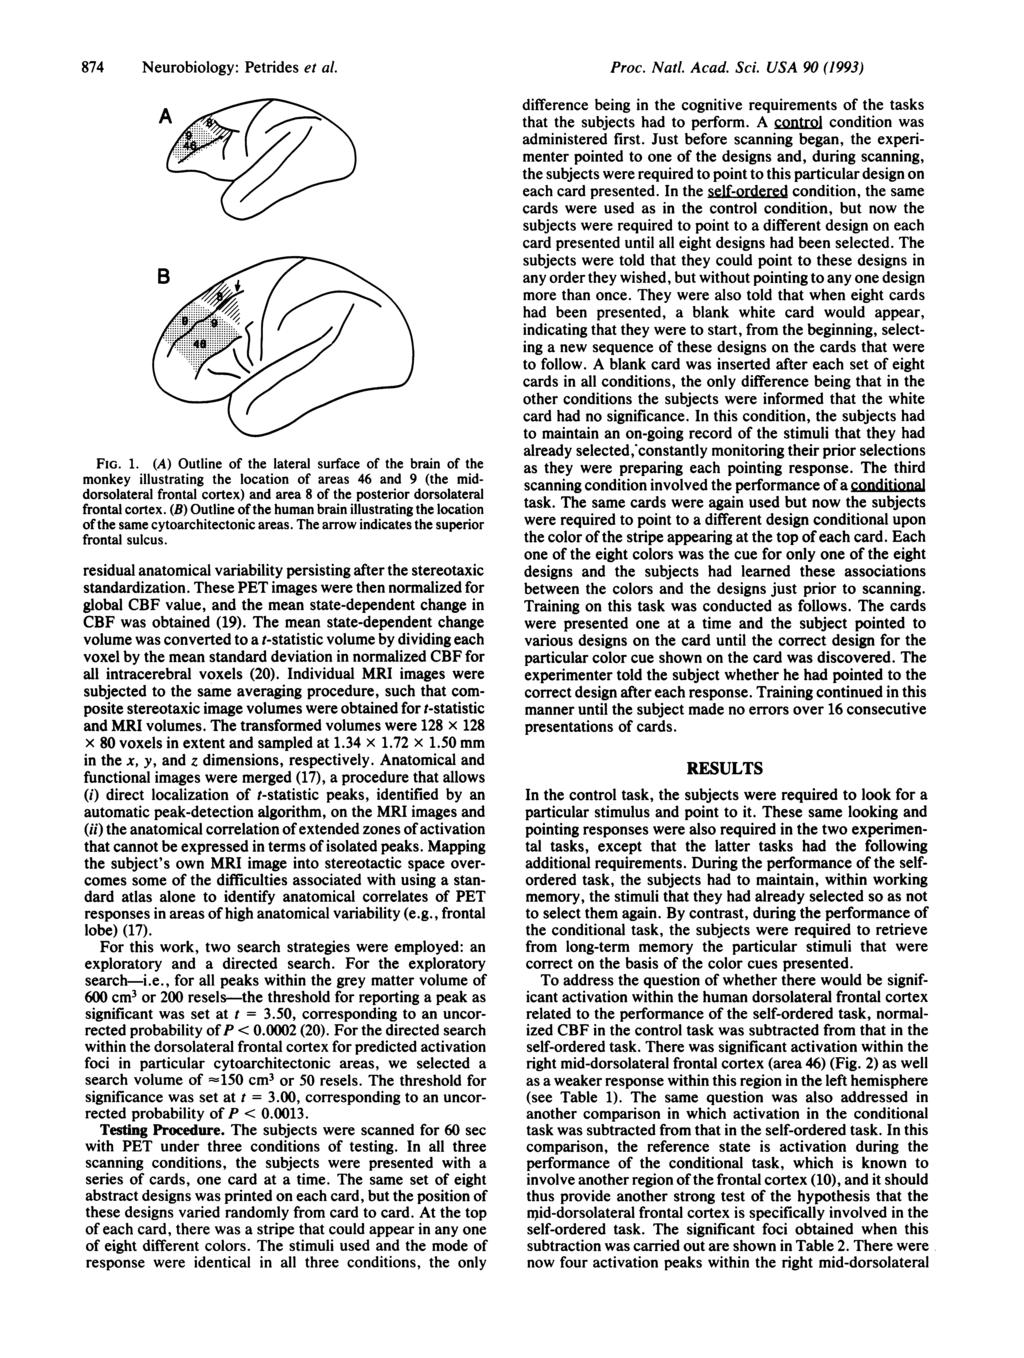 874 Neurobiology: Petrides et al. FIG. 1.